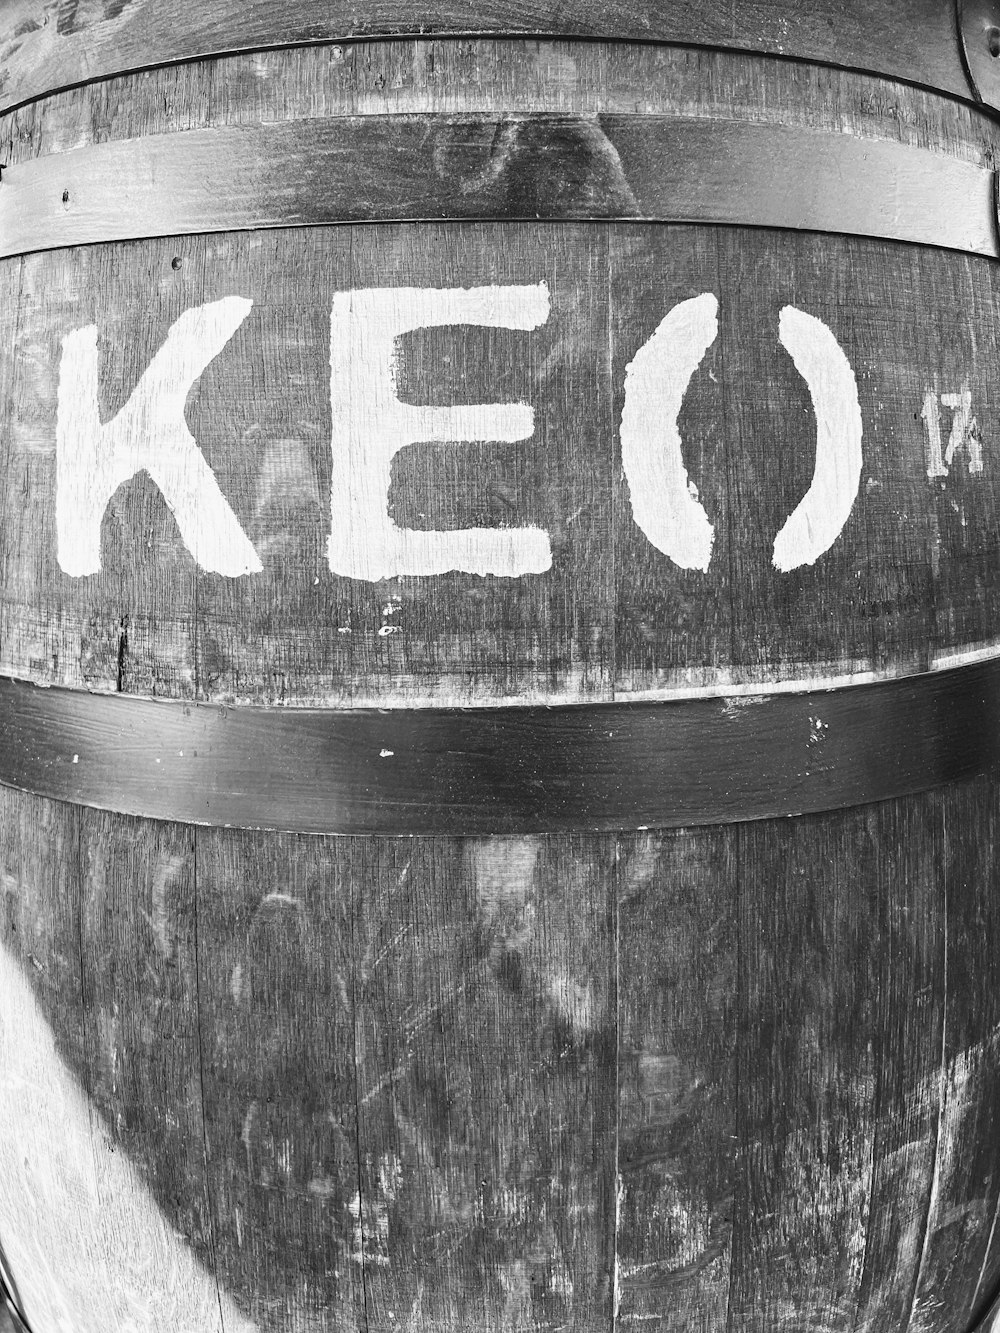 a keg with the word keg written on it